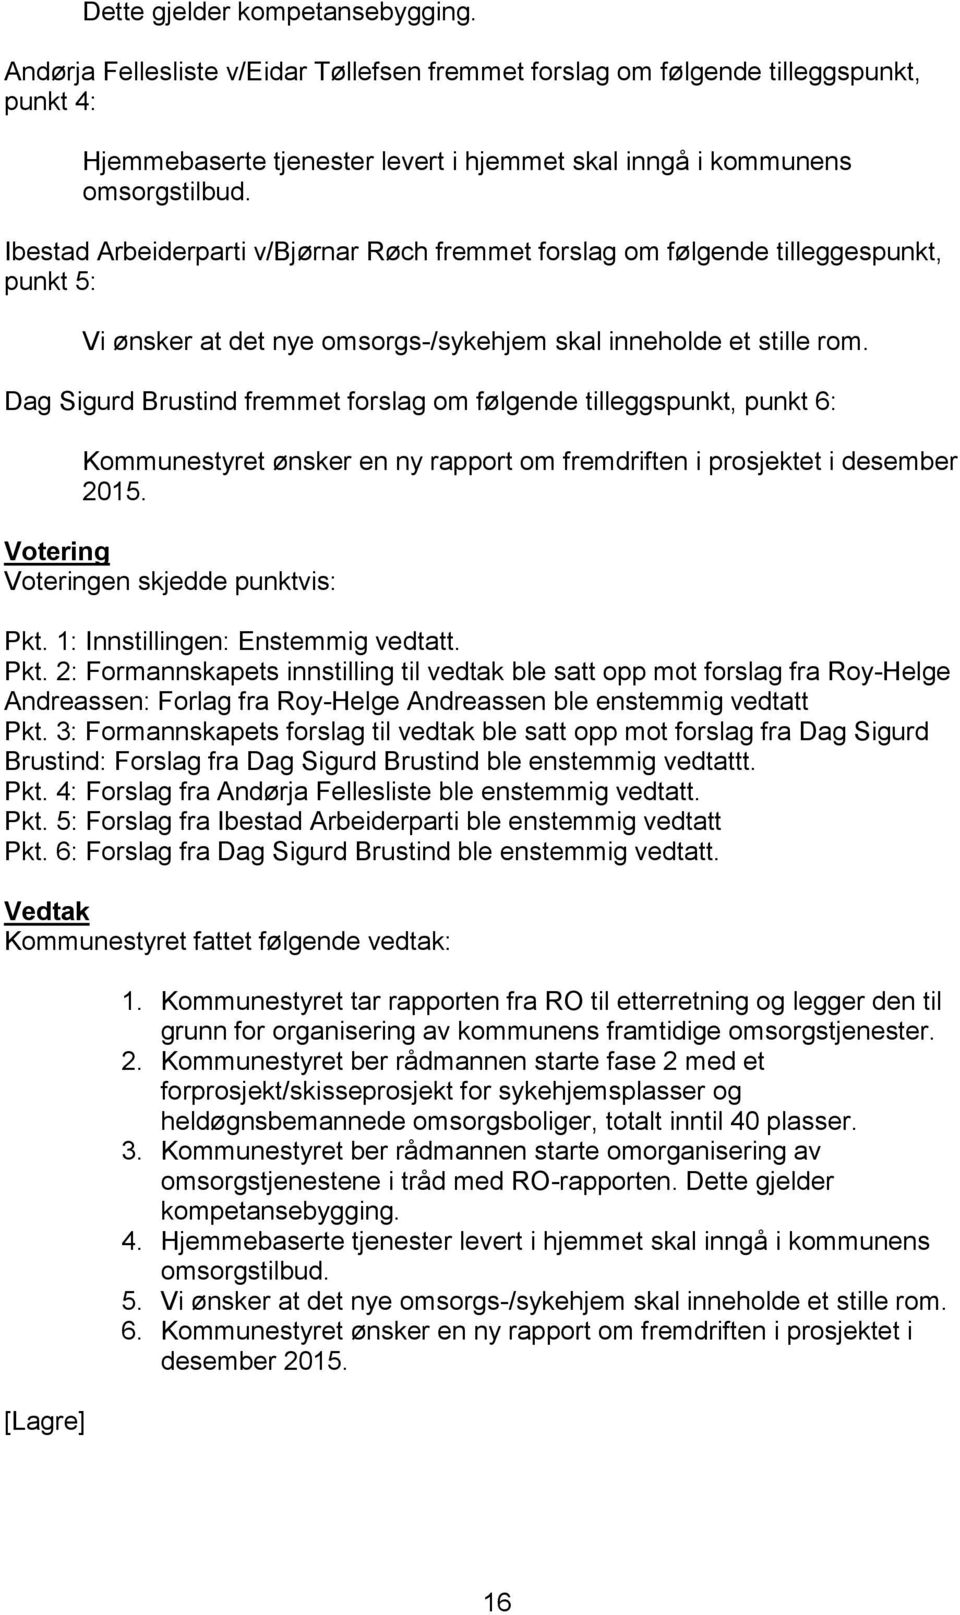 Ibestad Arbeiderparti v/bjørnar Røch fremmet forslag om følgende tilleggespunkt, punkt 5: Vi ønsker at det nye omsorgs-/sykehjem skal inneholde et stille rom.